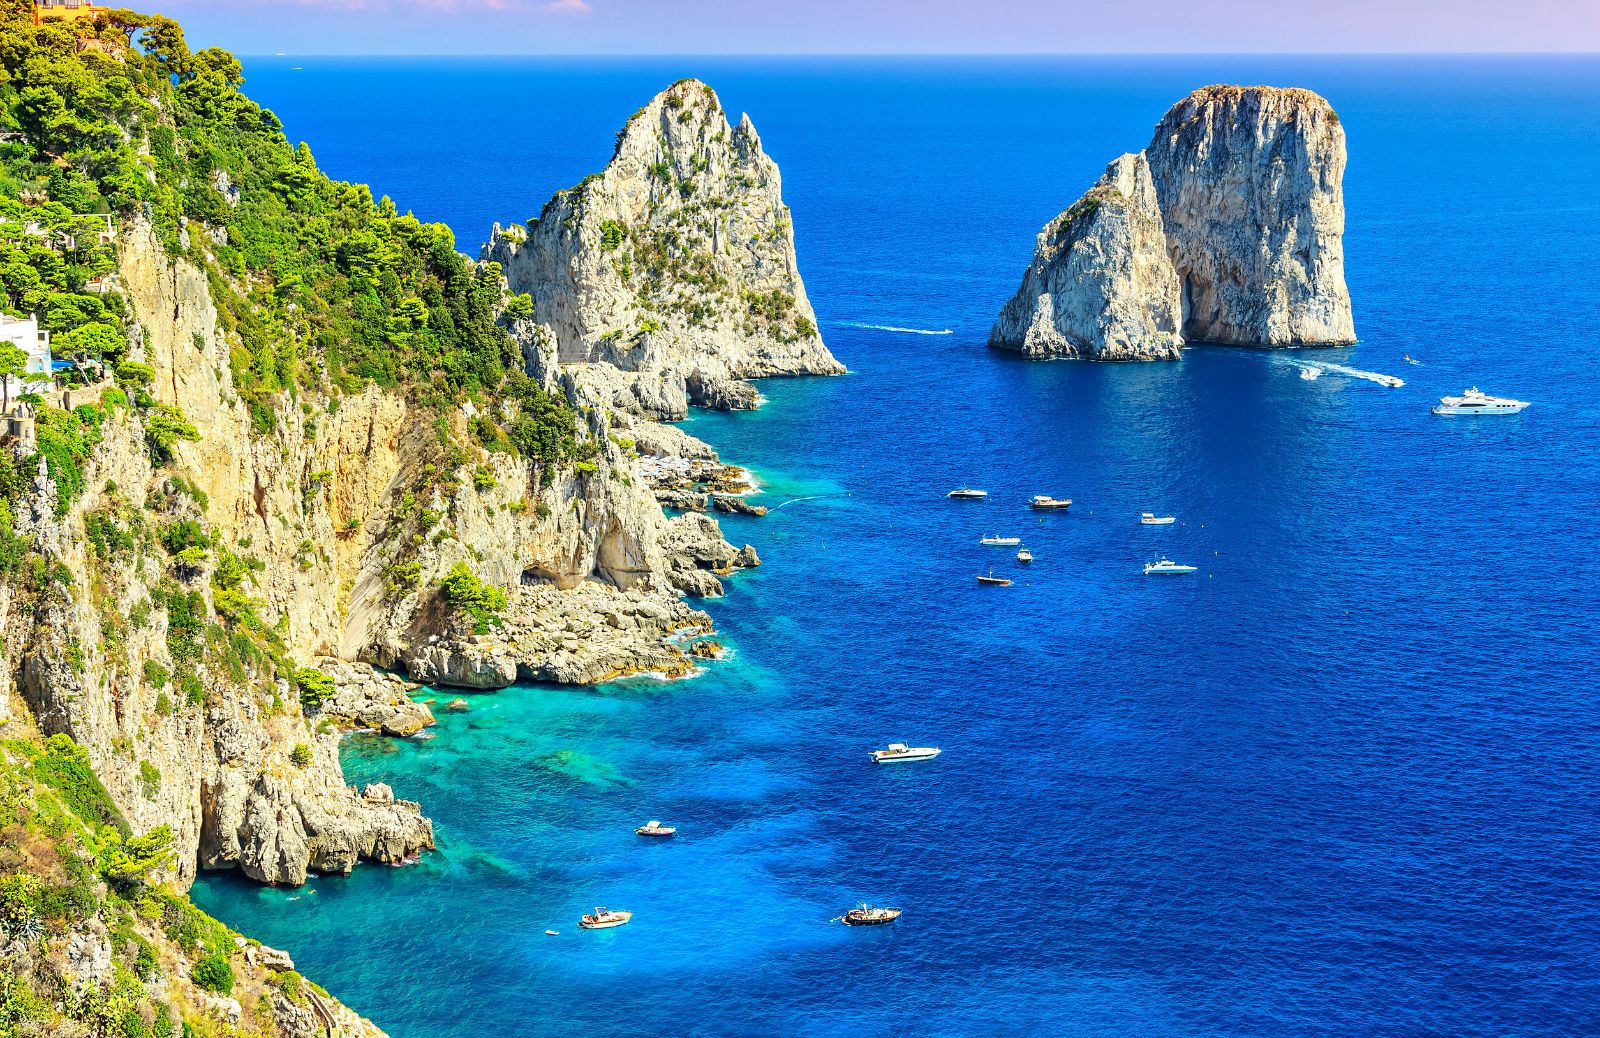 Spiagge più belle d'Italia 2019: ecco dove sono